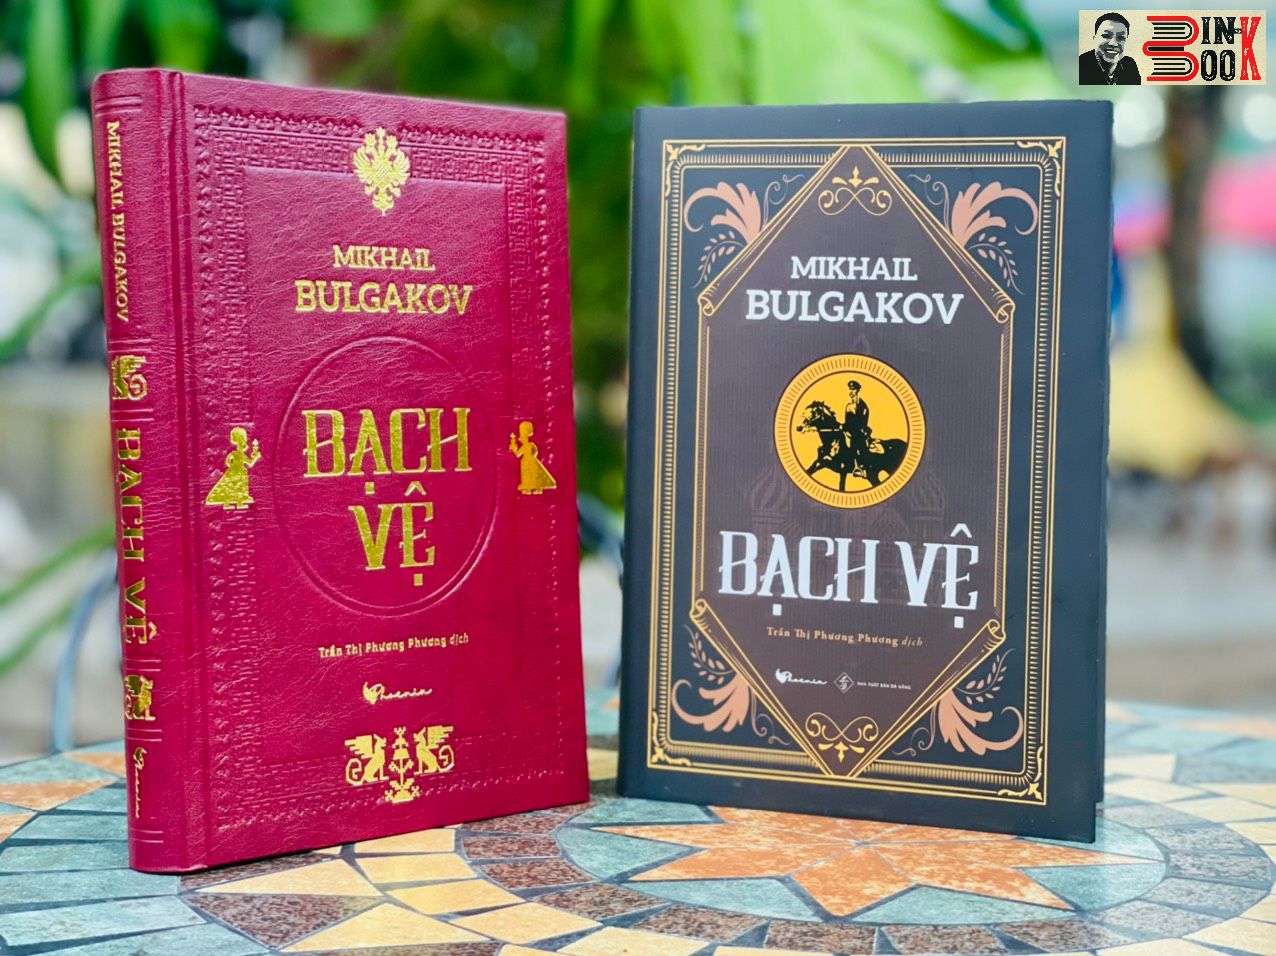 (Bìa cứng simili giả da in 200 cuốn – Lần đầu được dịch ra tiếng việt) BẠCH VỆ - Mikhail Bulgakov – Trần Thị Phương Phương dịch – PhoenixBooks – NXB Đà Nẵng